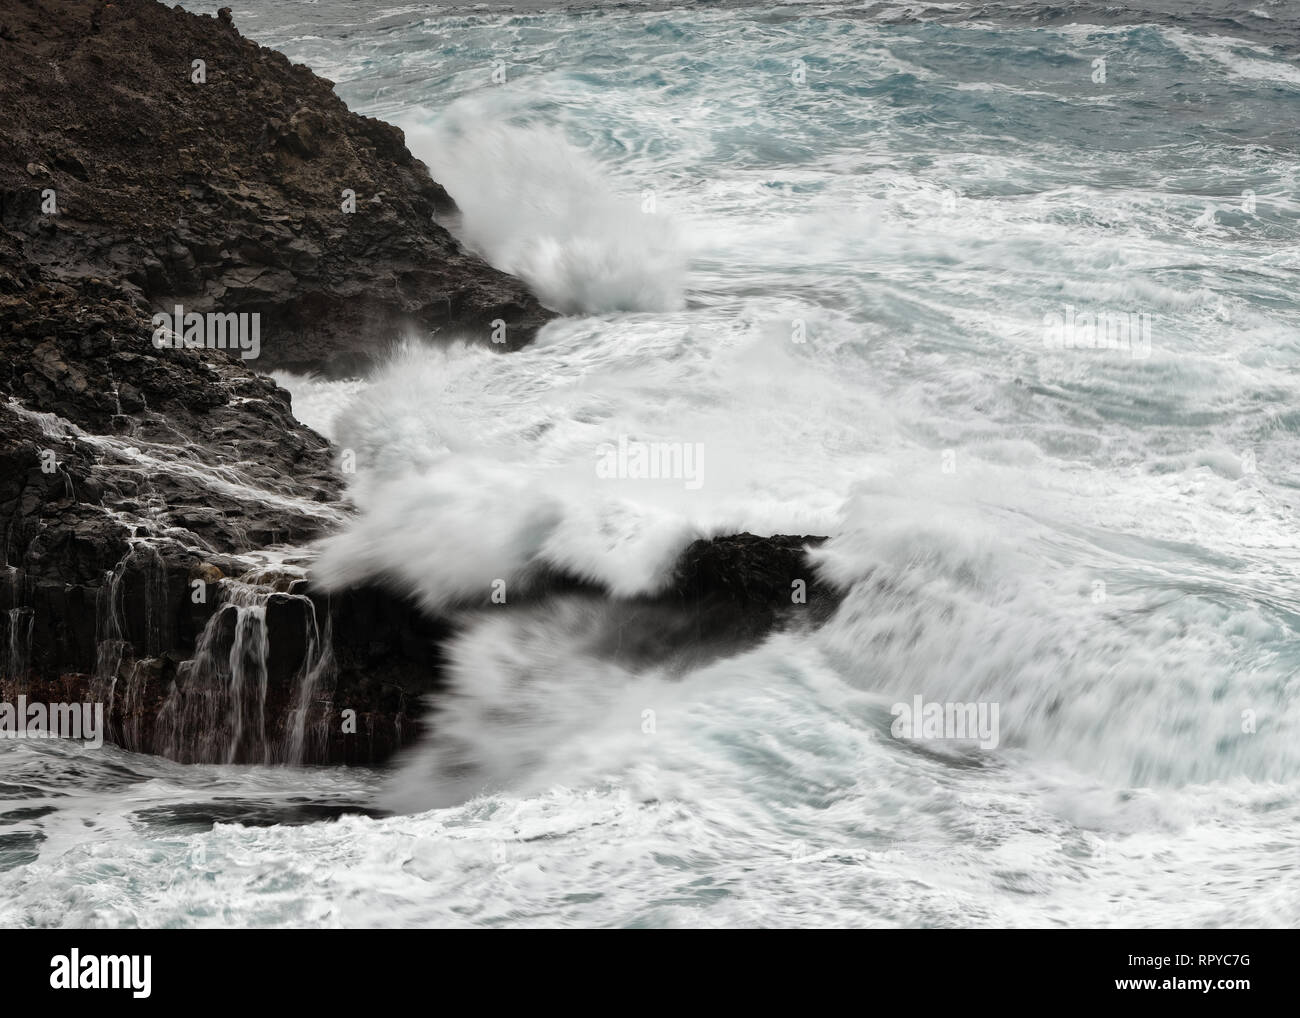 Eine Welle bricht bei stürmischem Wetter auf einem Riff vor einer felsigen Küste, Wasser Bewegung in lange Belichtung - Ort: Spanien, Kanarische Inseln, La Palma Stockfoto